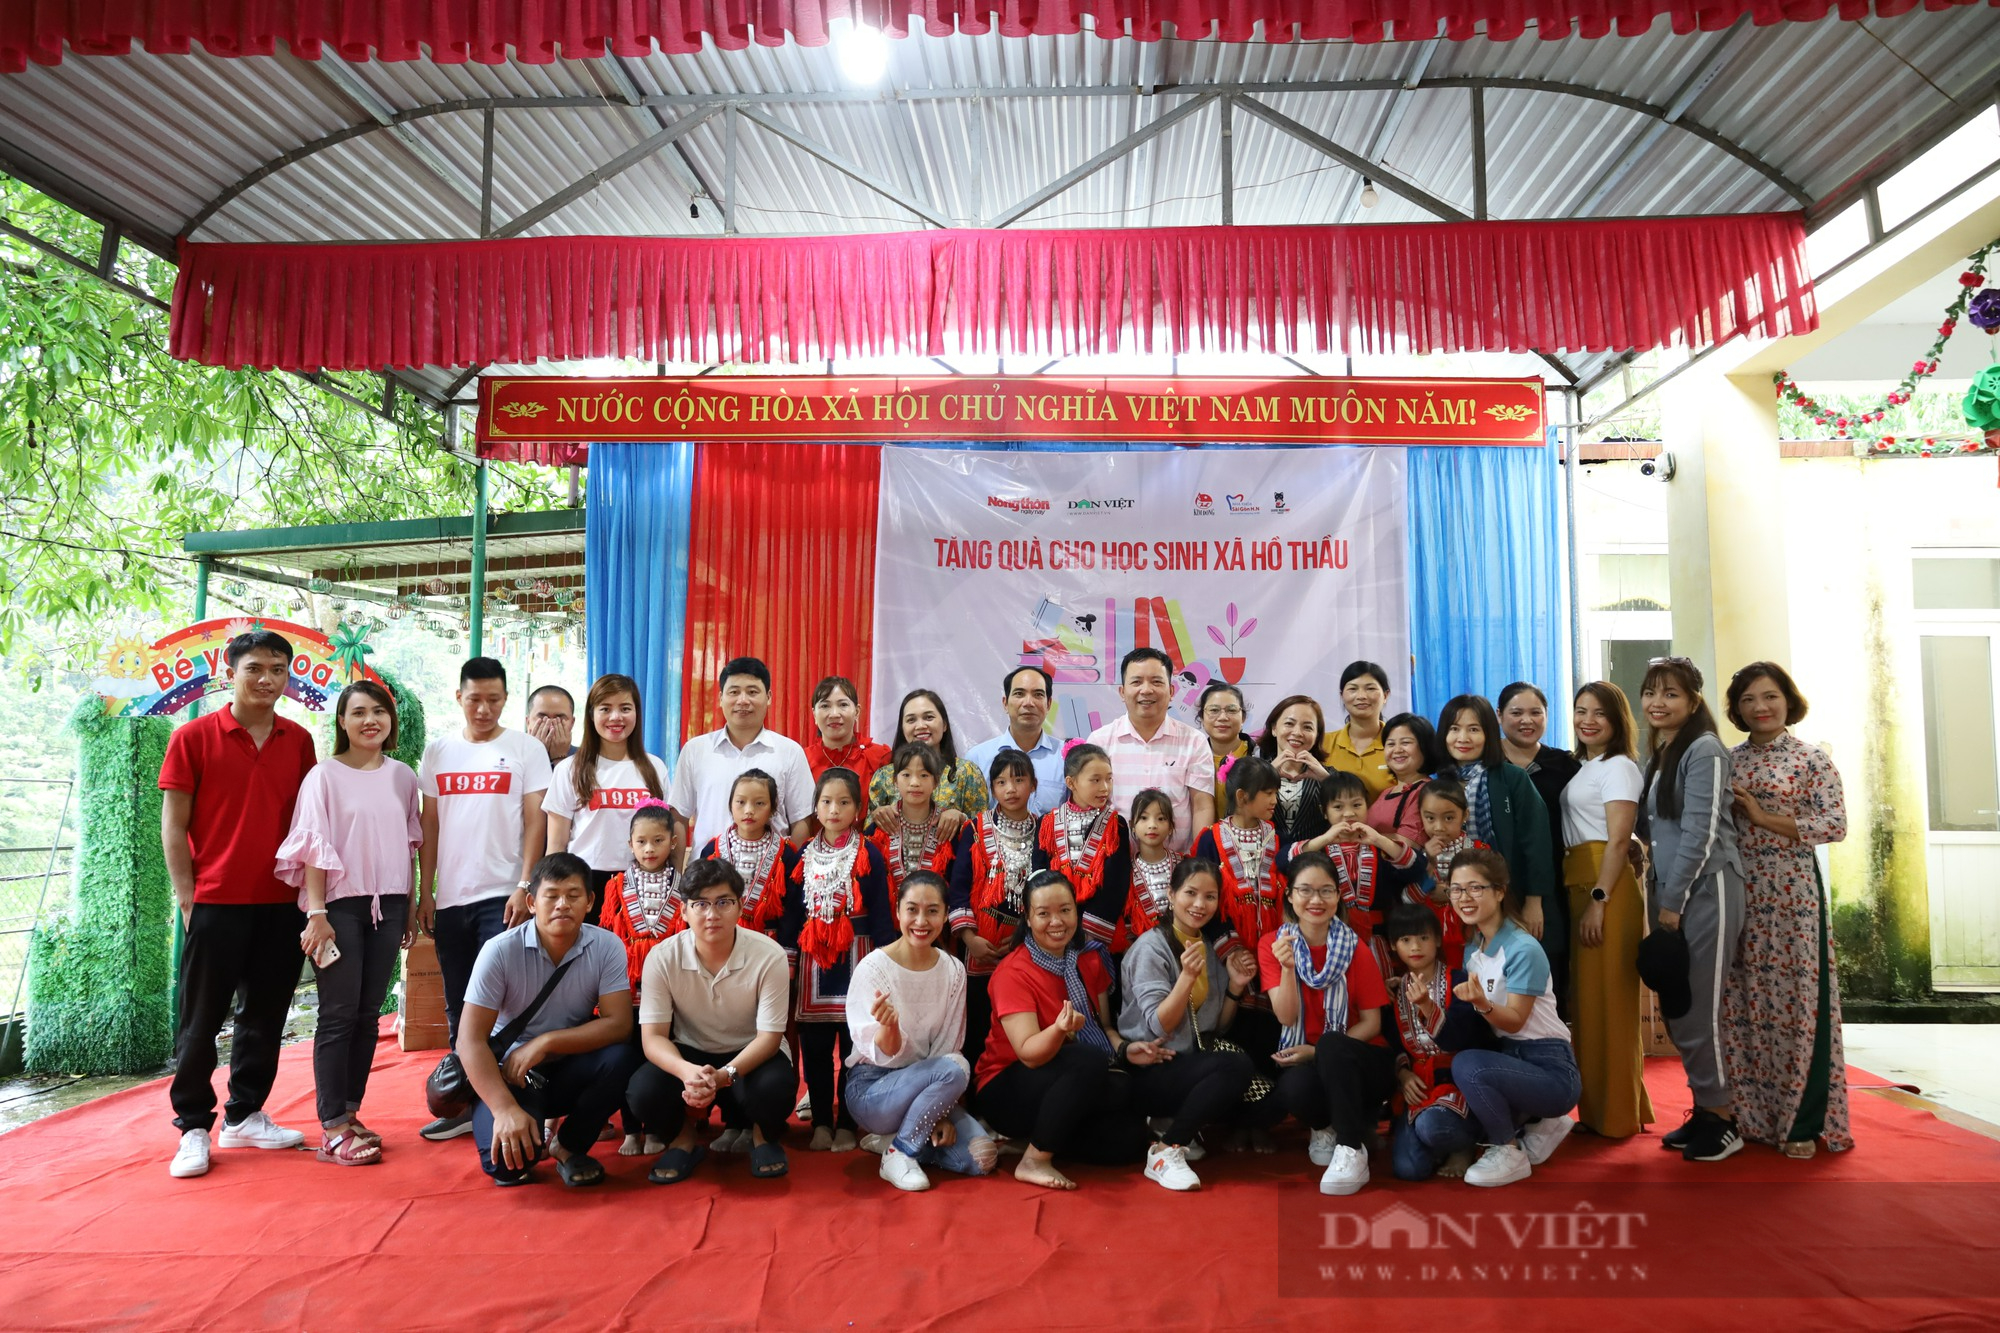 Báo NTNN/Dân Việt cảm ơn các nhà tài trợ đồng hành chương trình khánh thành cầu ở Hà Giang - Ảnh 3.